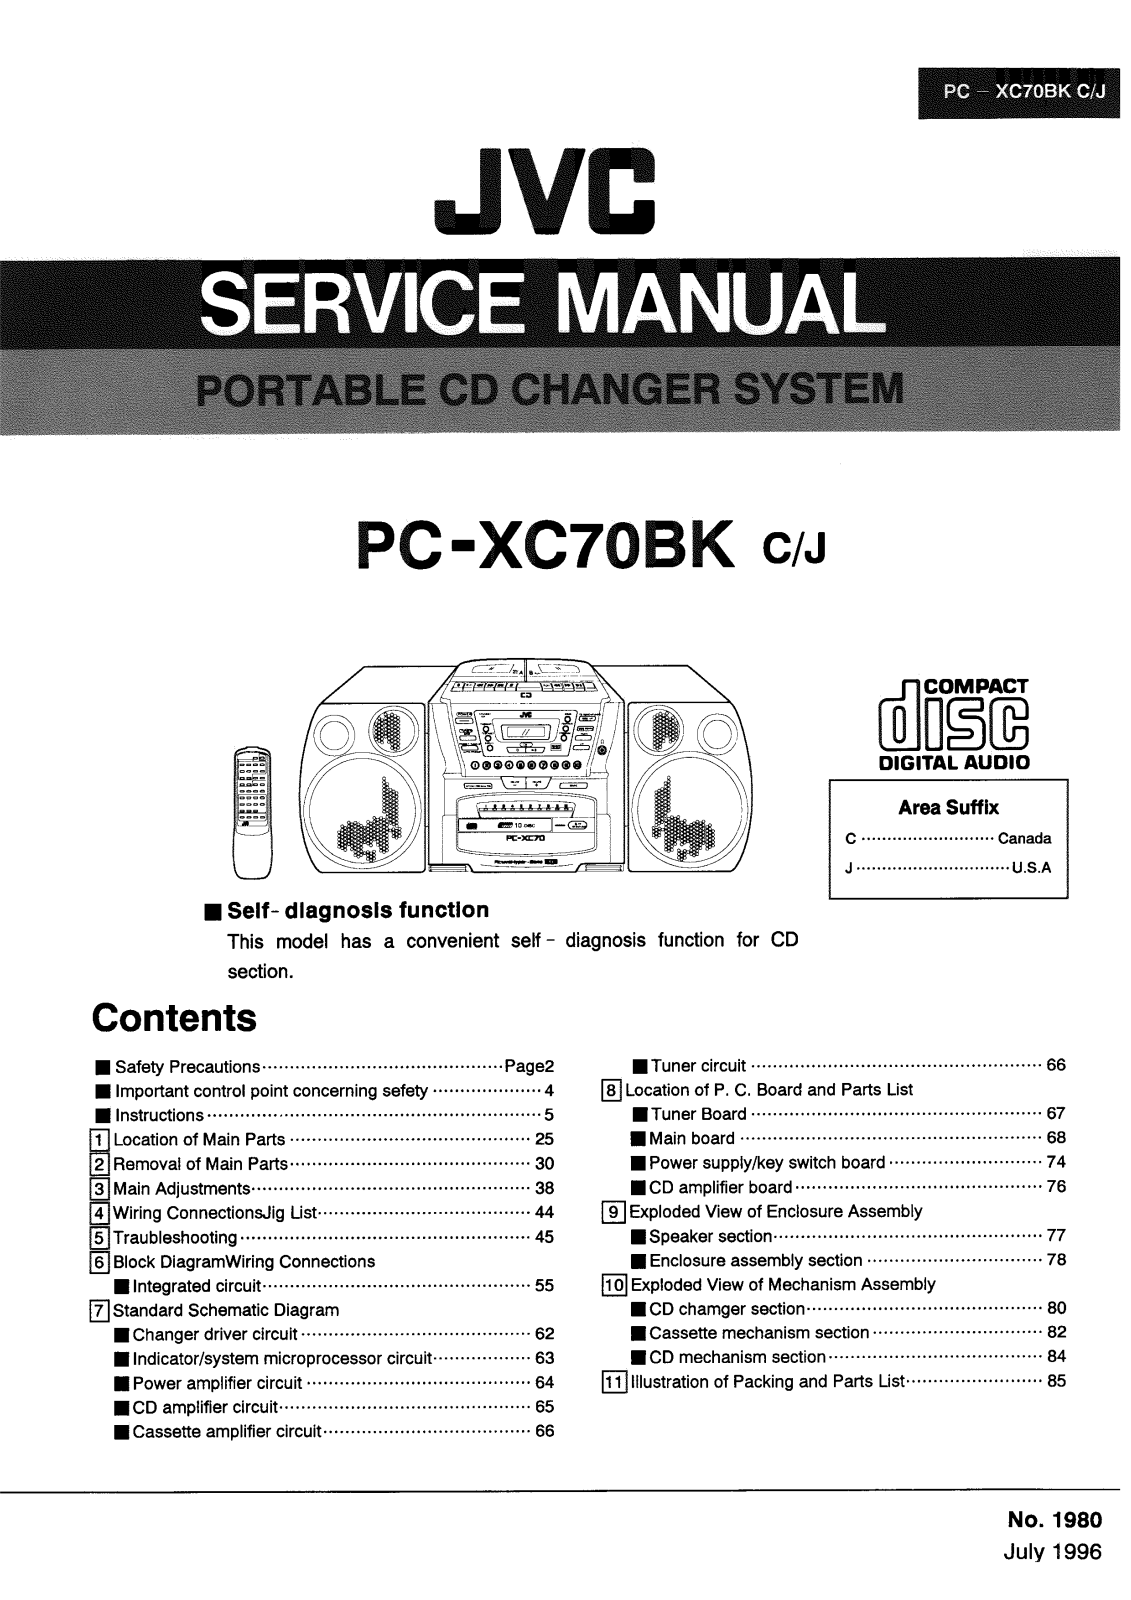 Jvc PC-XC70-BK Service Manual